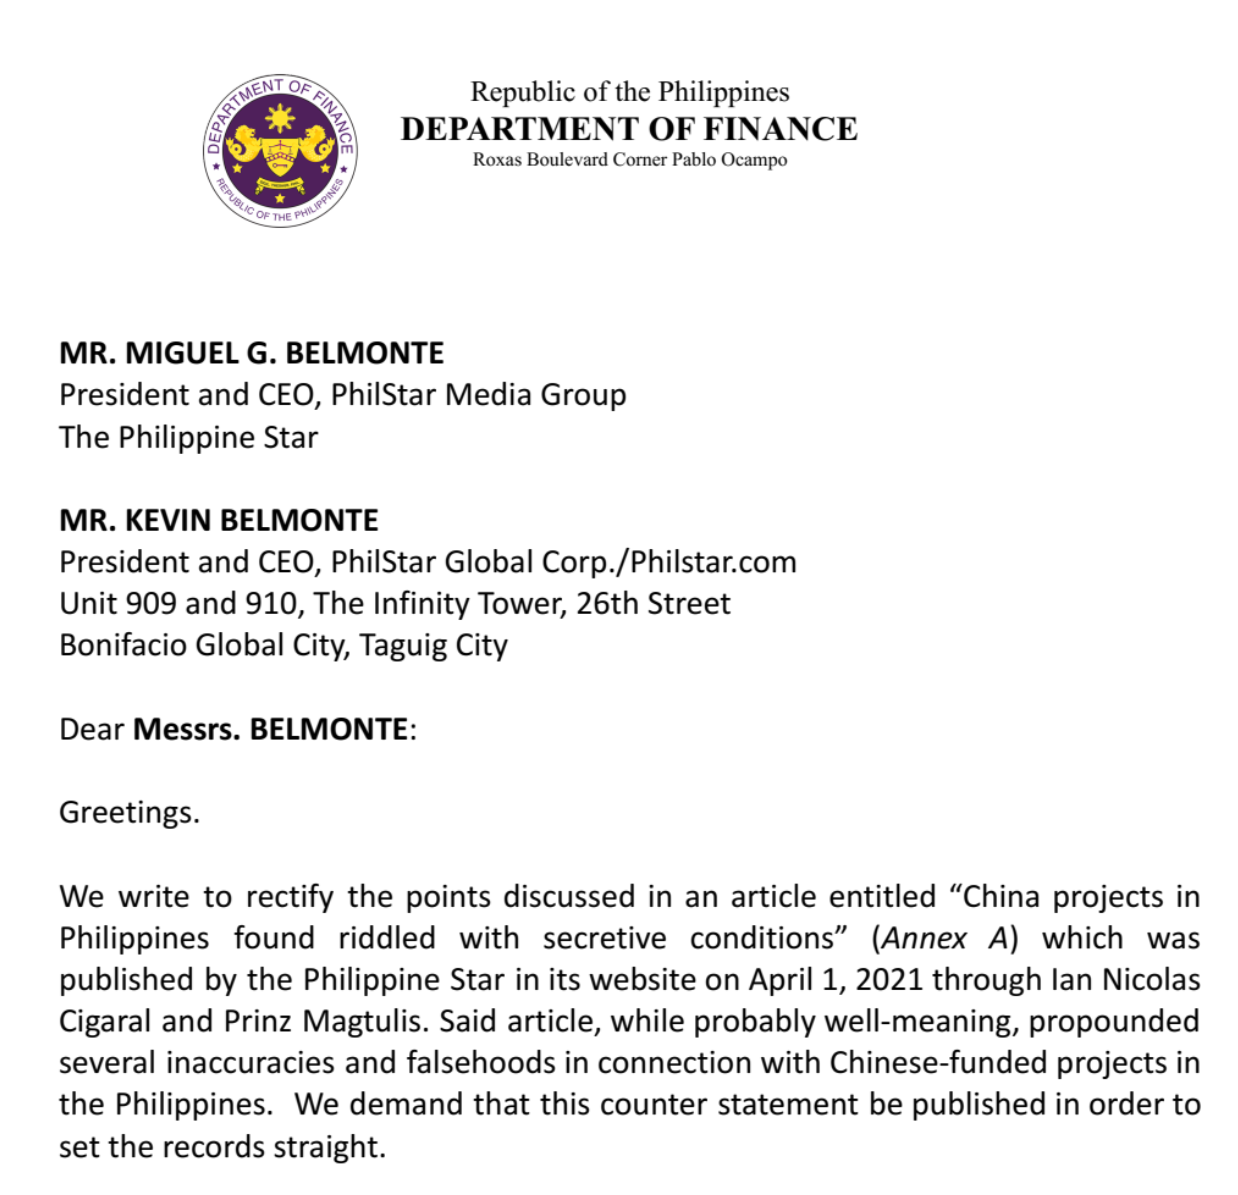 菲律宾财政部长发表声明，驳斥菲律宾媒体关于“中国在菲律宾的投资充满秘密条款”的报道，并为删除菲律宾媒体的文章表示歉意。